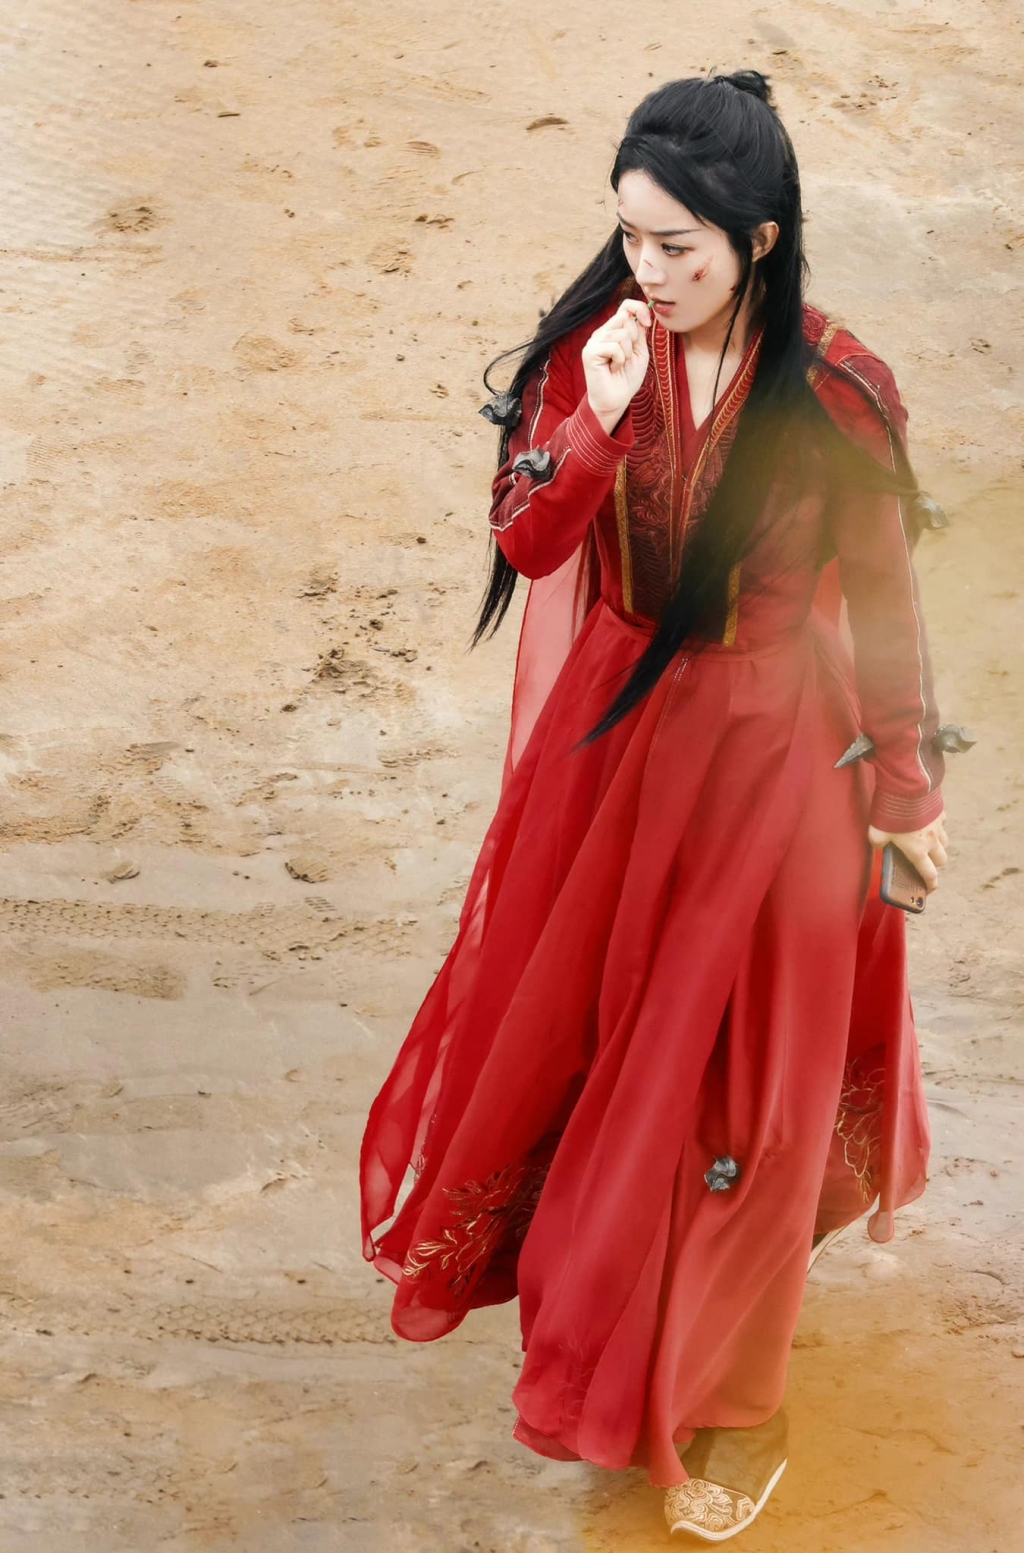 Từ cô gái thôn quê, Triệu Lệ Dĩnh 'rực đỏ' với trang phục táo bạo trong Dữ Phượng Hành